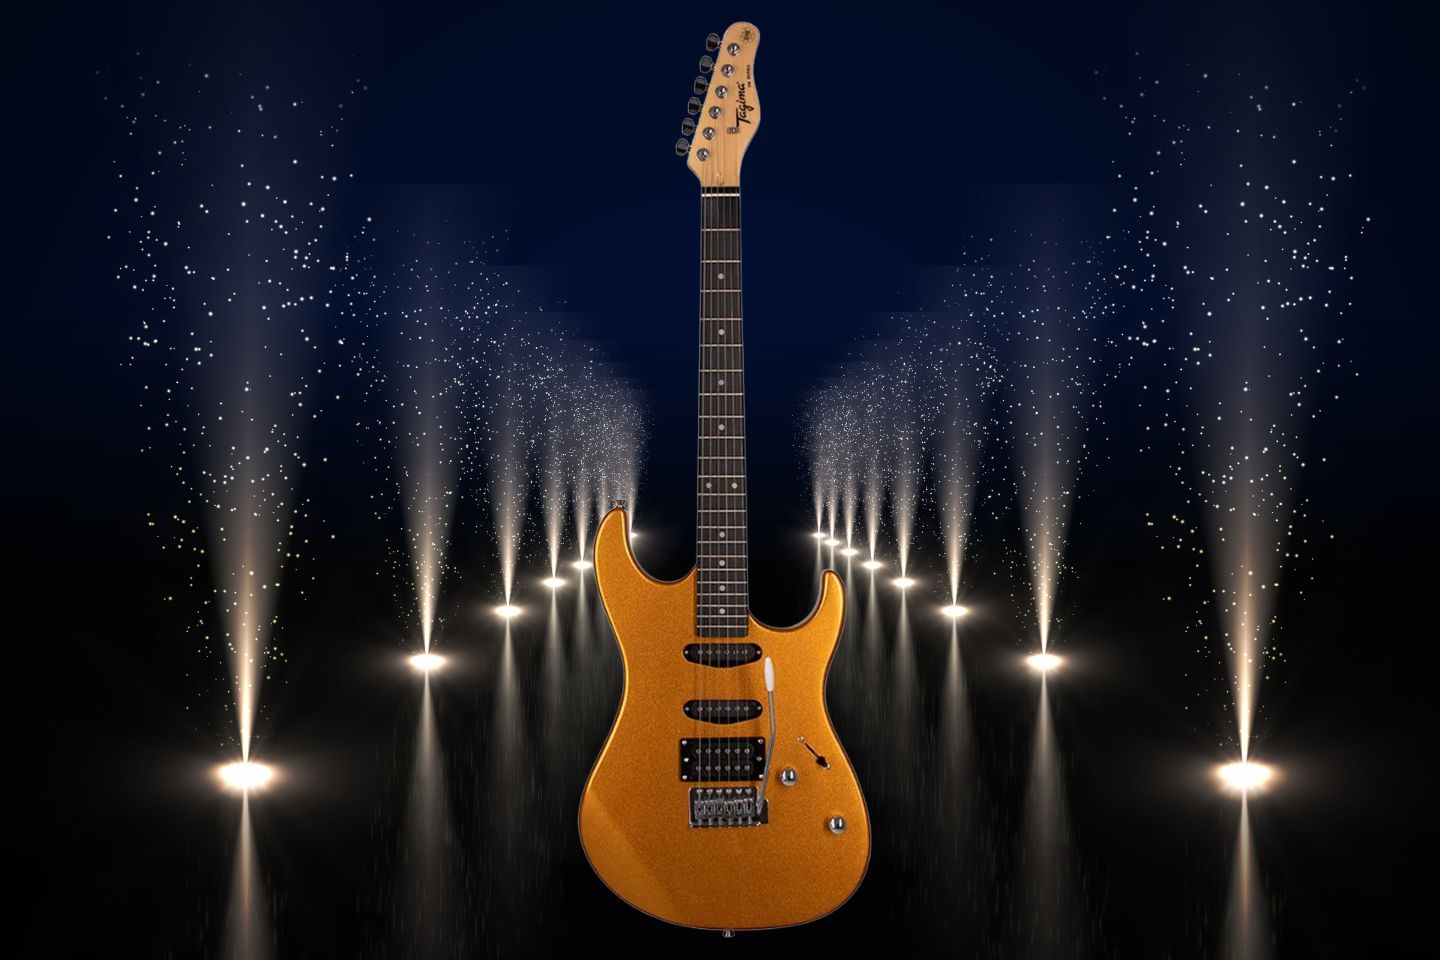 Guitarra elétrica Tagima TW Series TG-510 de tília metallic gold yellow com diapasão de madeira técnica